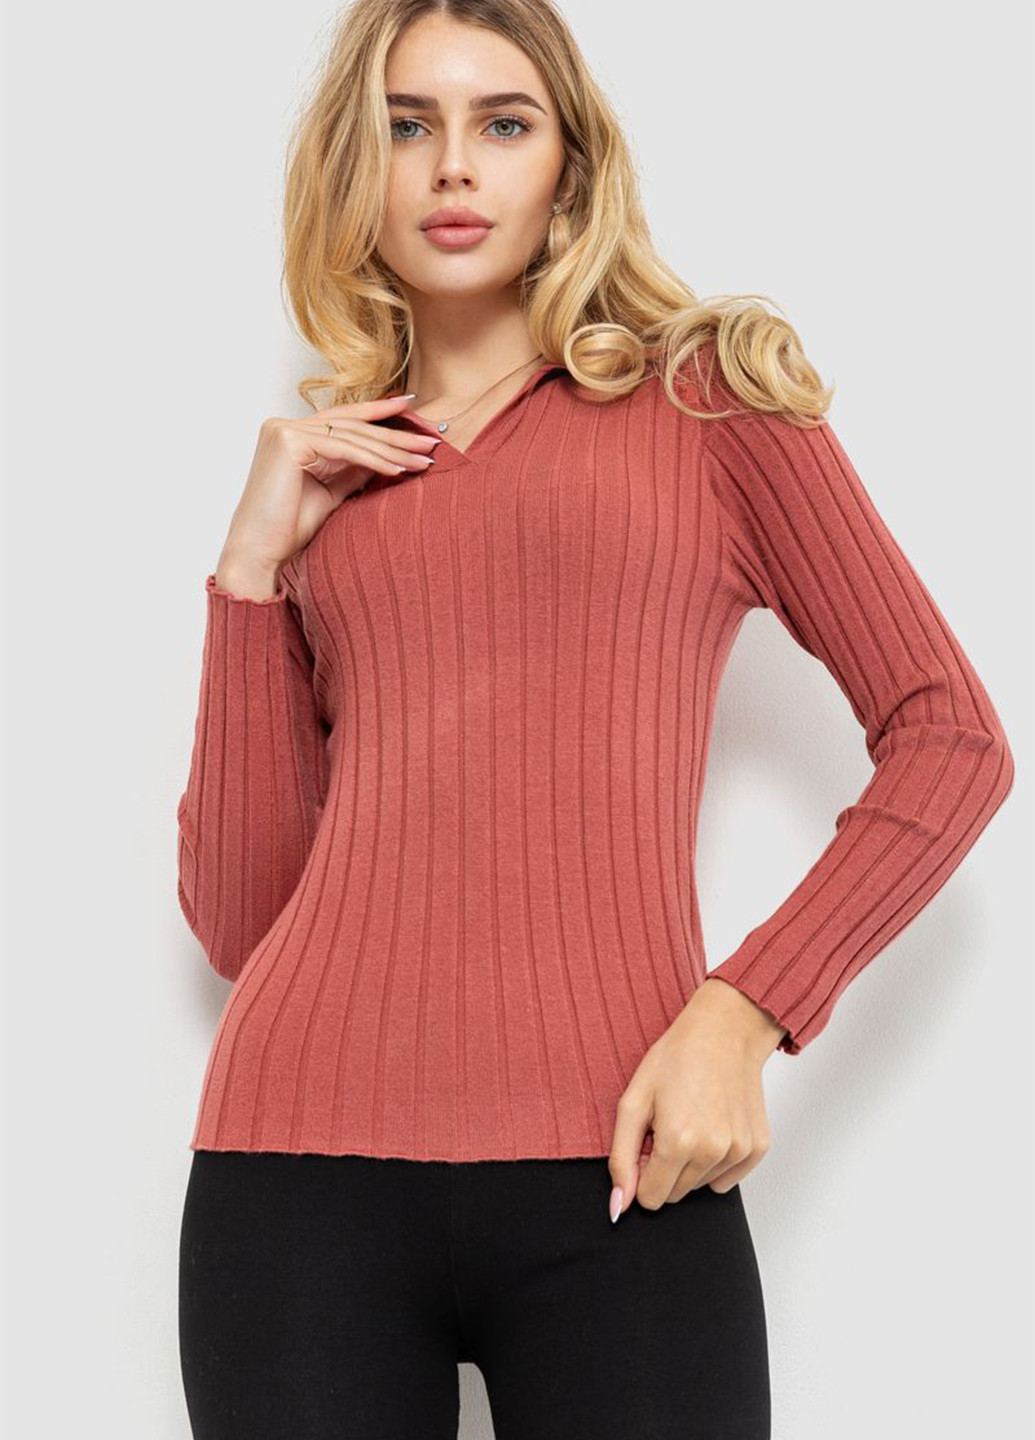 Коралловый демисезонный пуловер пуловер Ager